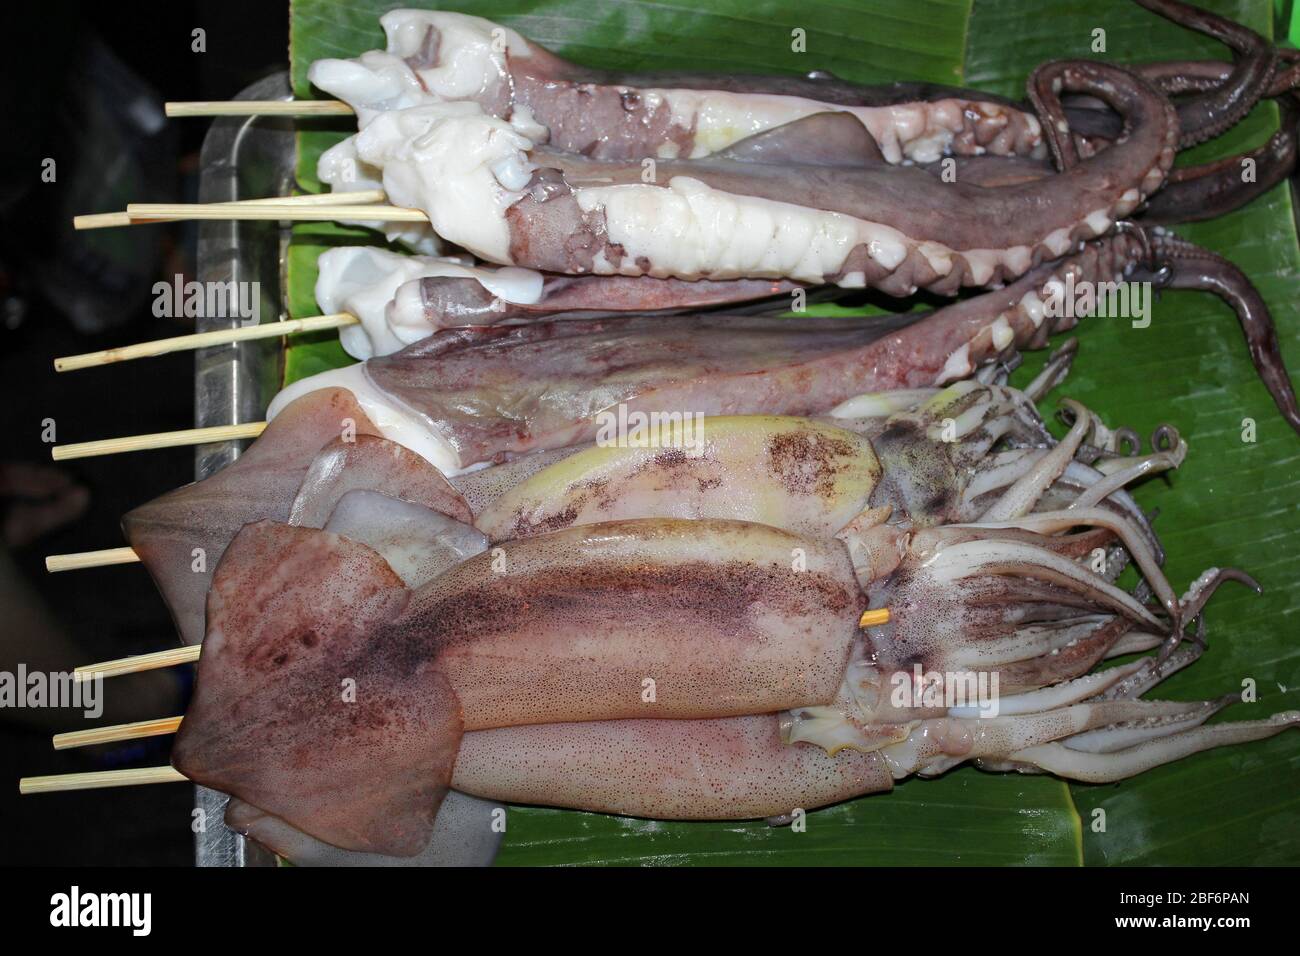 Frische Tentakel (Indian Squid - Loligo duvauceli) auf Spießen, die auf dem Hua hin's Night Market in Thailand gegrillt werden können Stockfoto